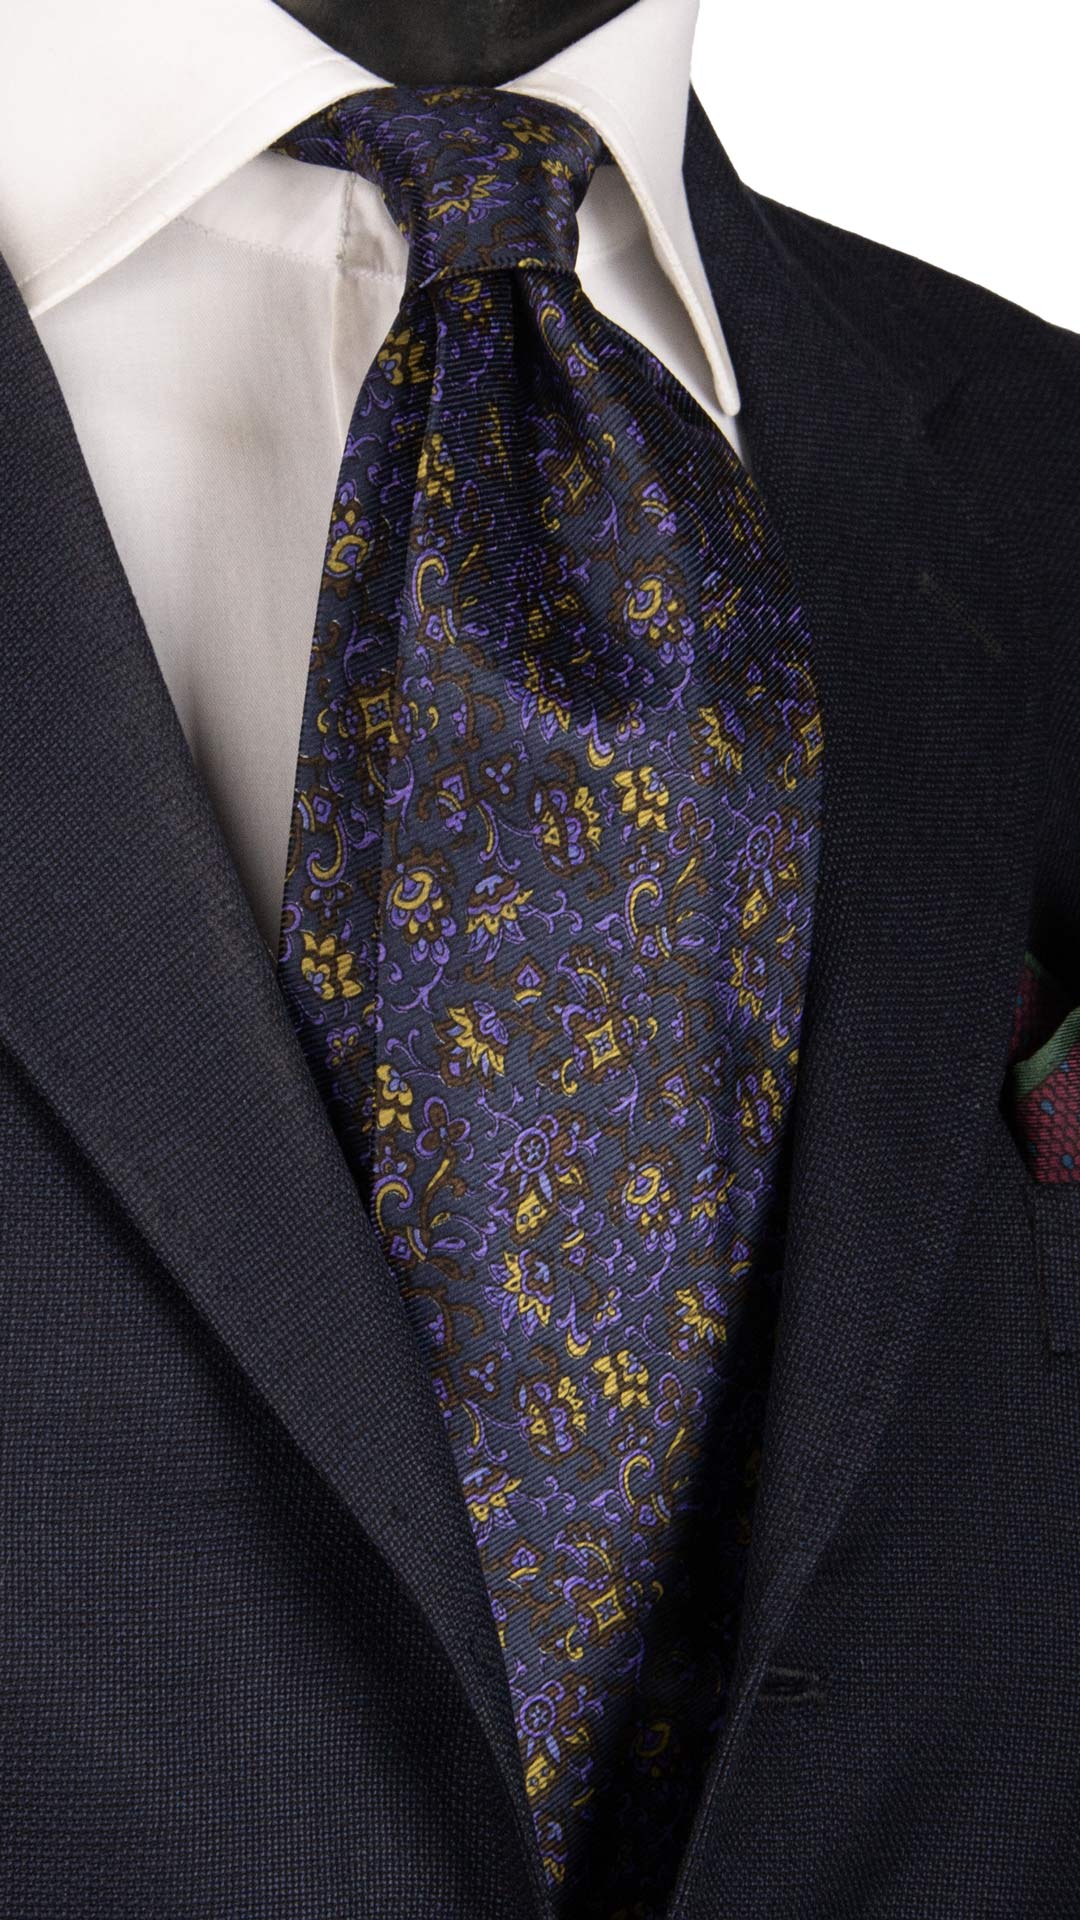 Cravatta Vintage in Saia di Seta Blu A Fiori Marrone Lilla Giallo Oro CV833 Made in Italy Graffeo Cravatte